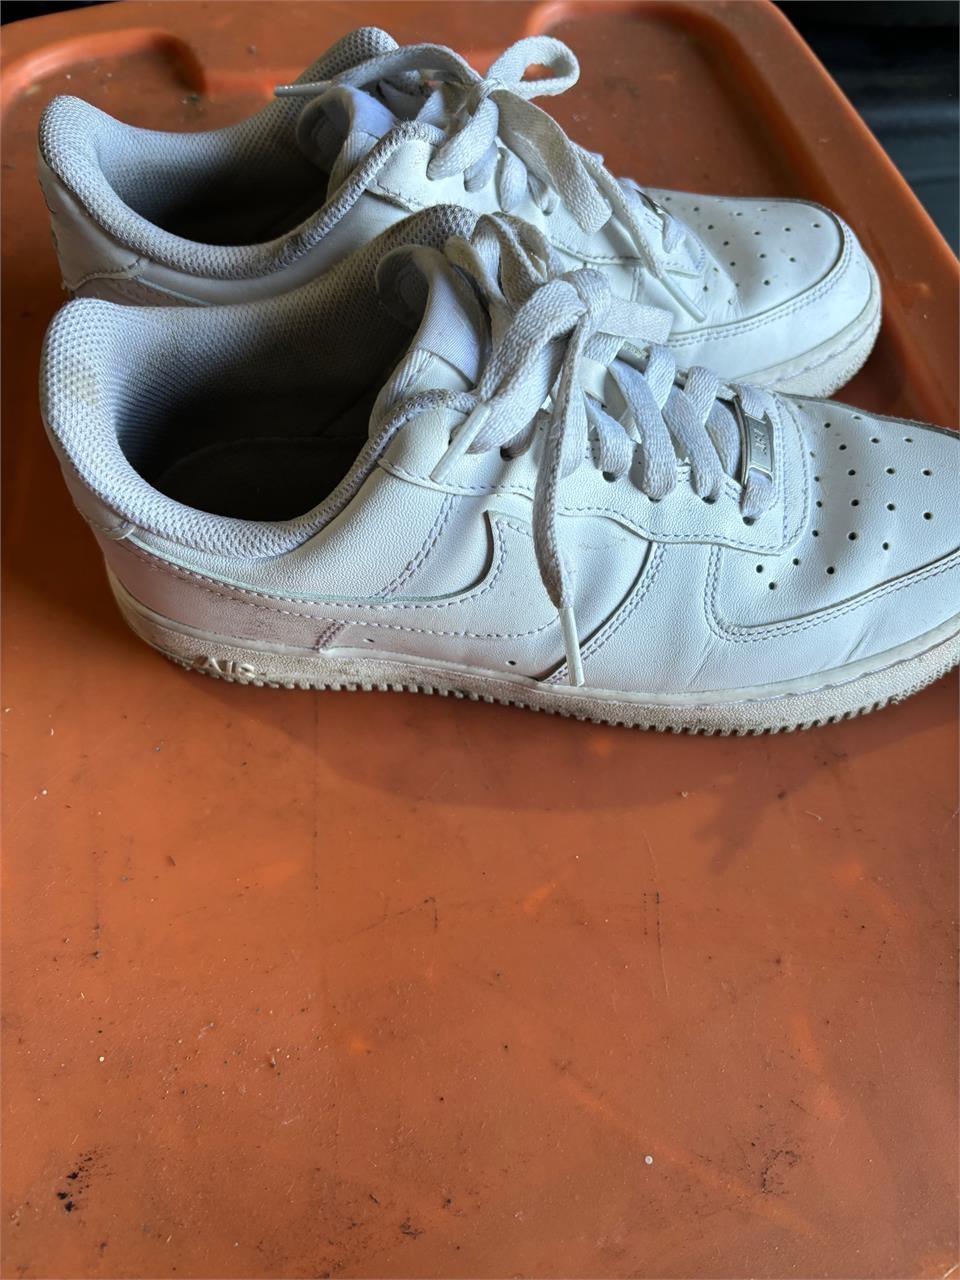 Nike air shoes